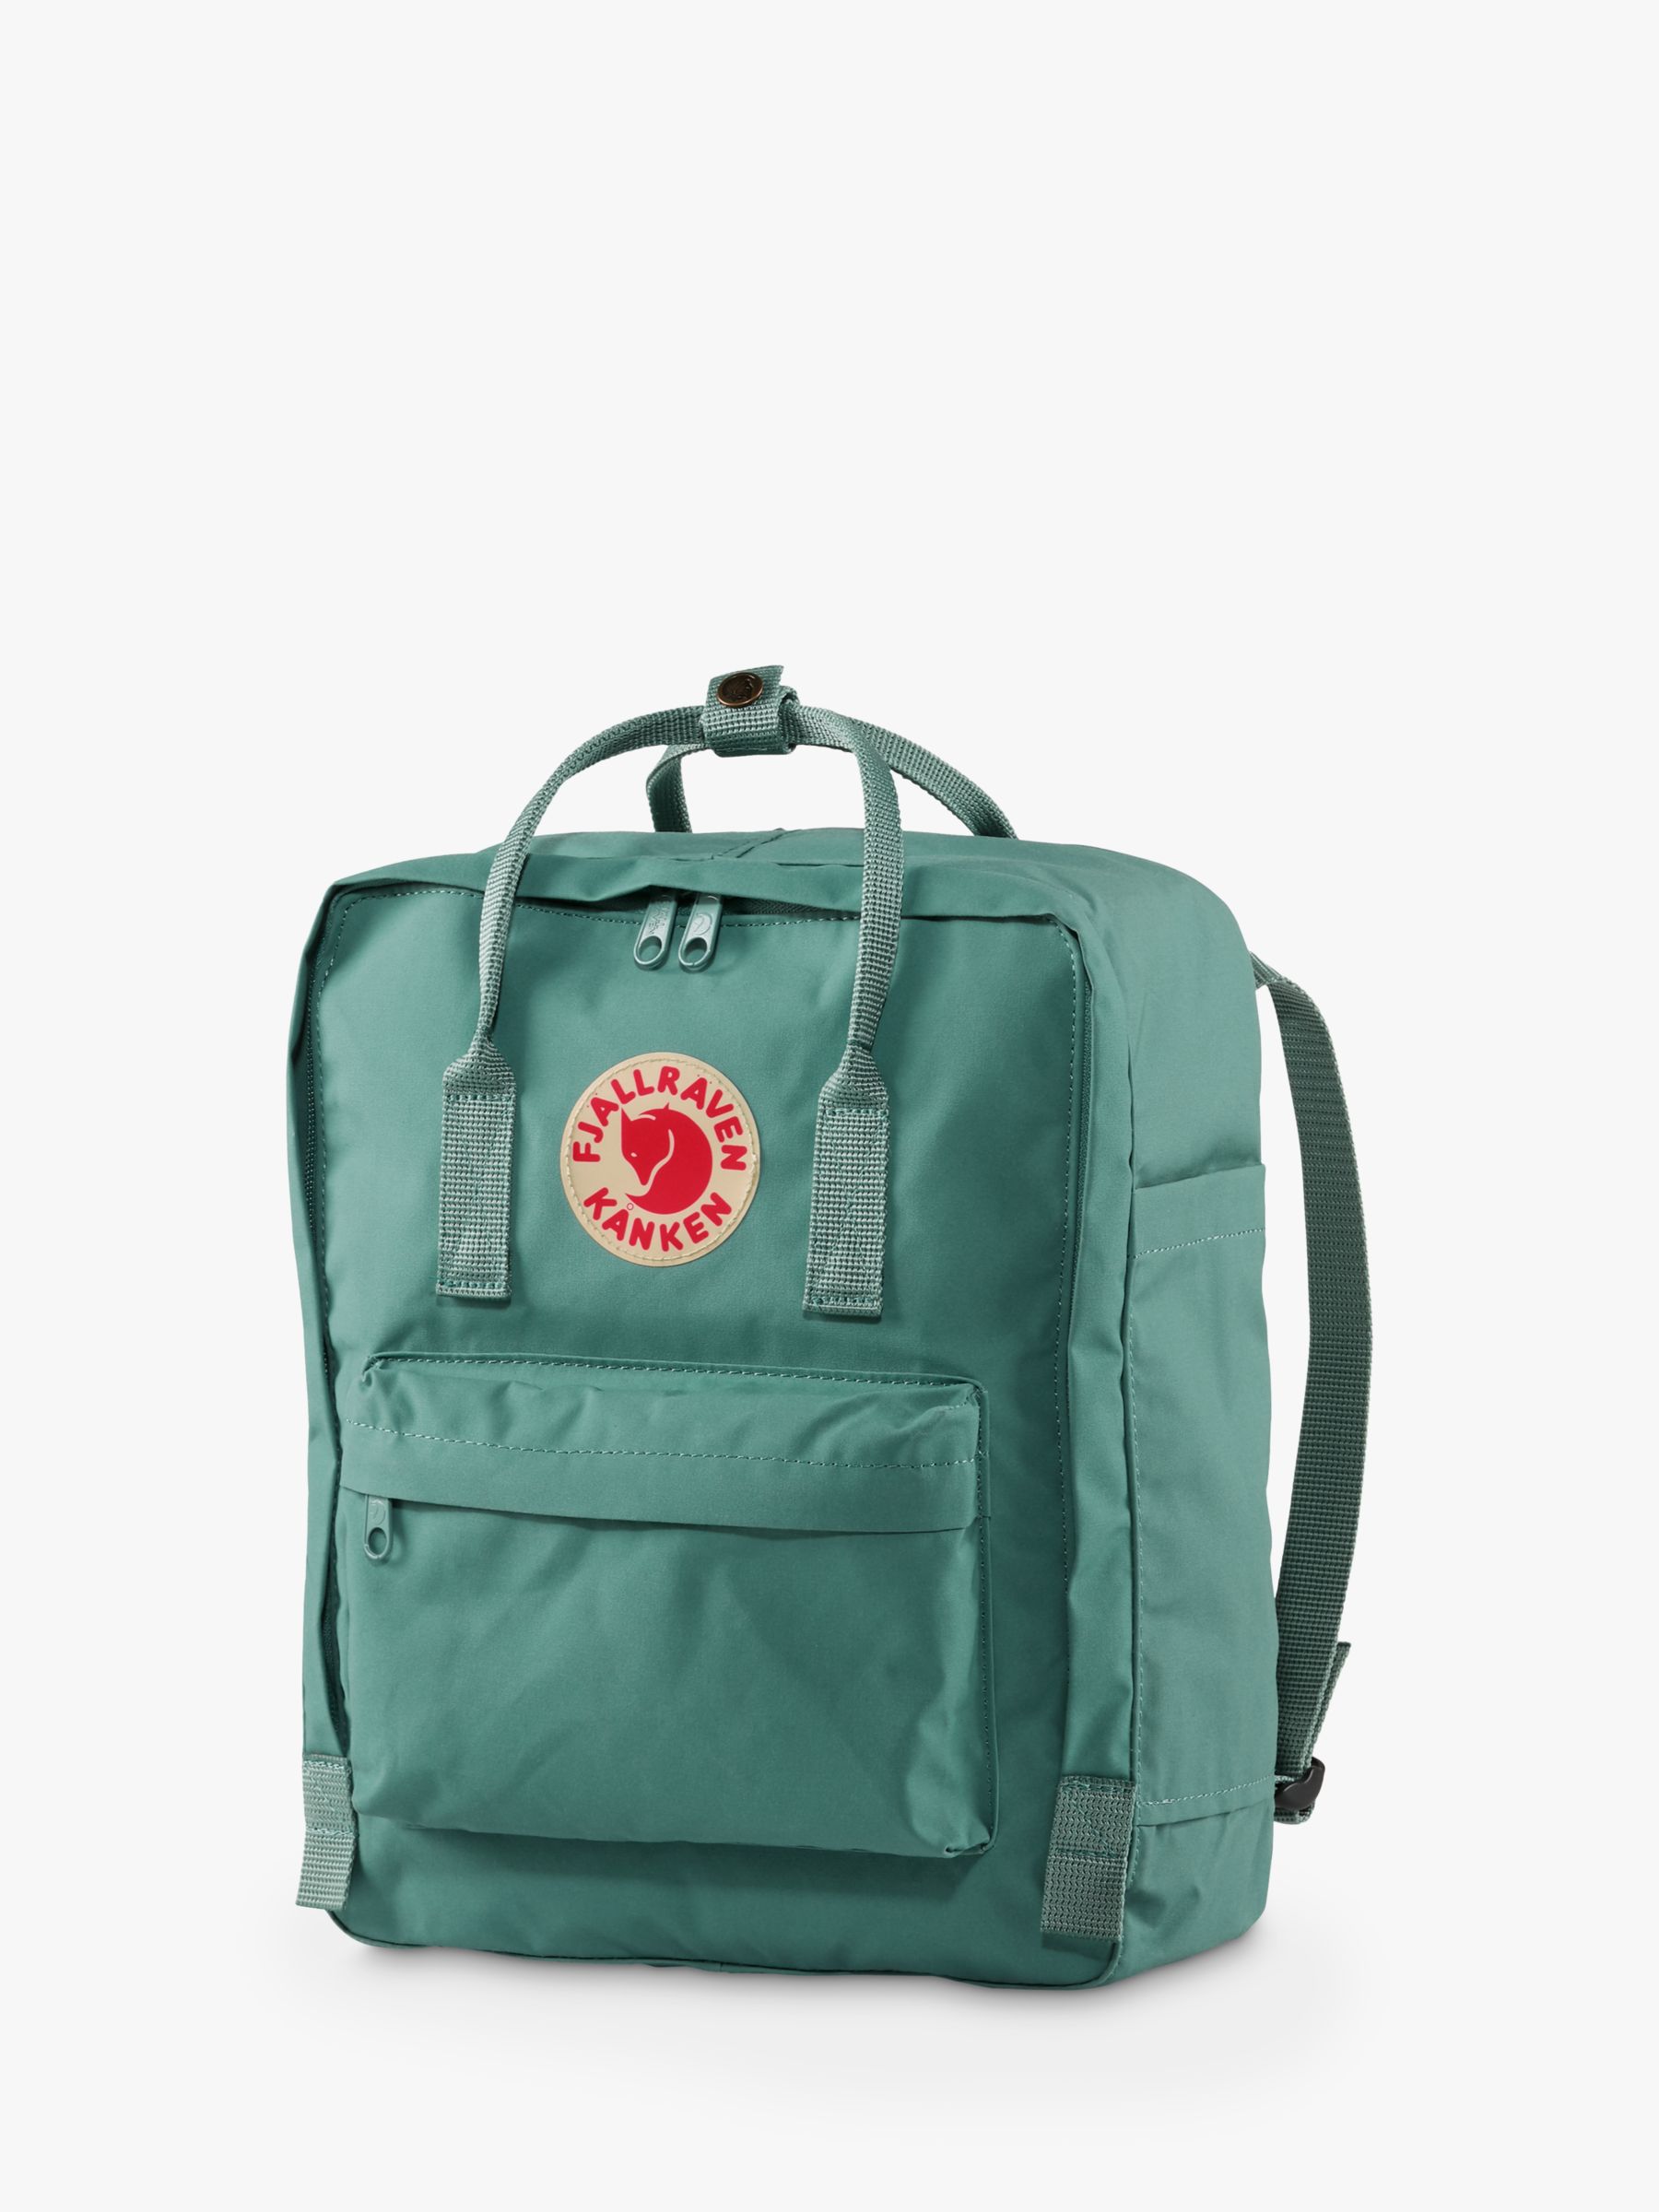 Fjallraven - Kanken Classic Backpack for Everyday, Green